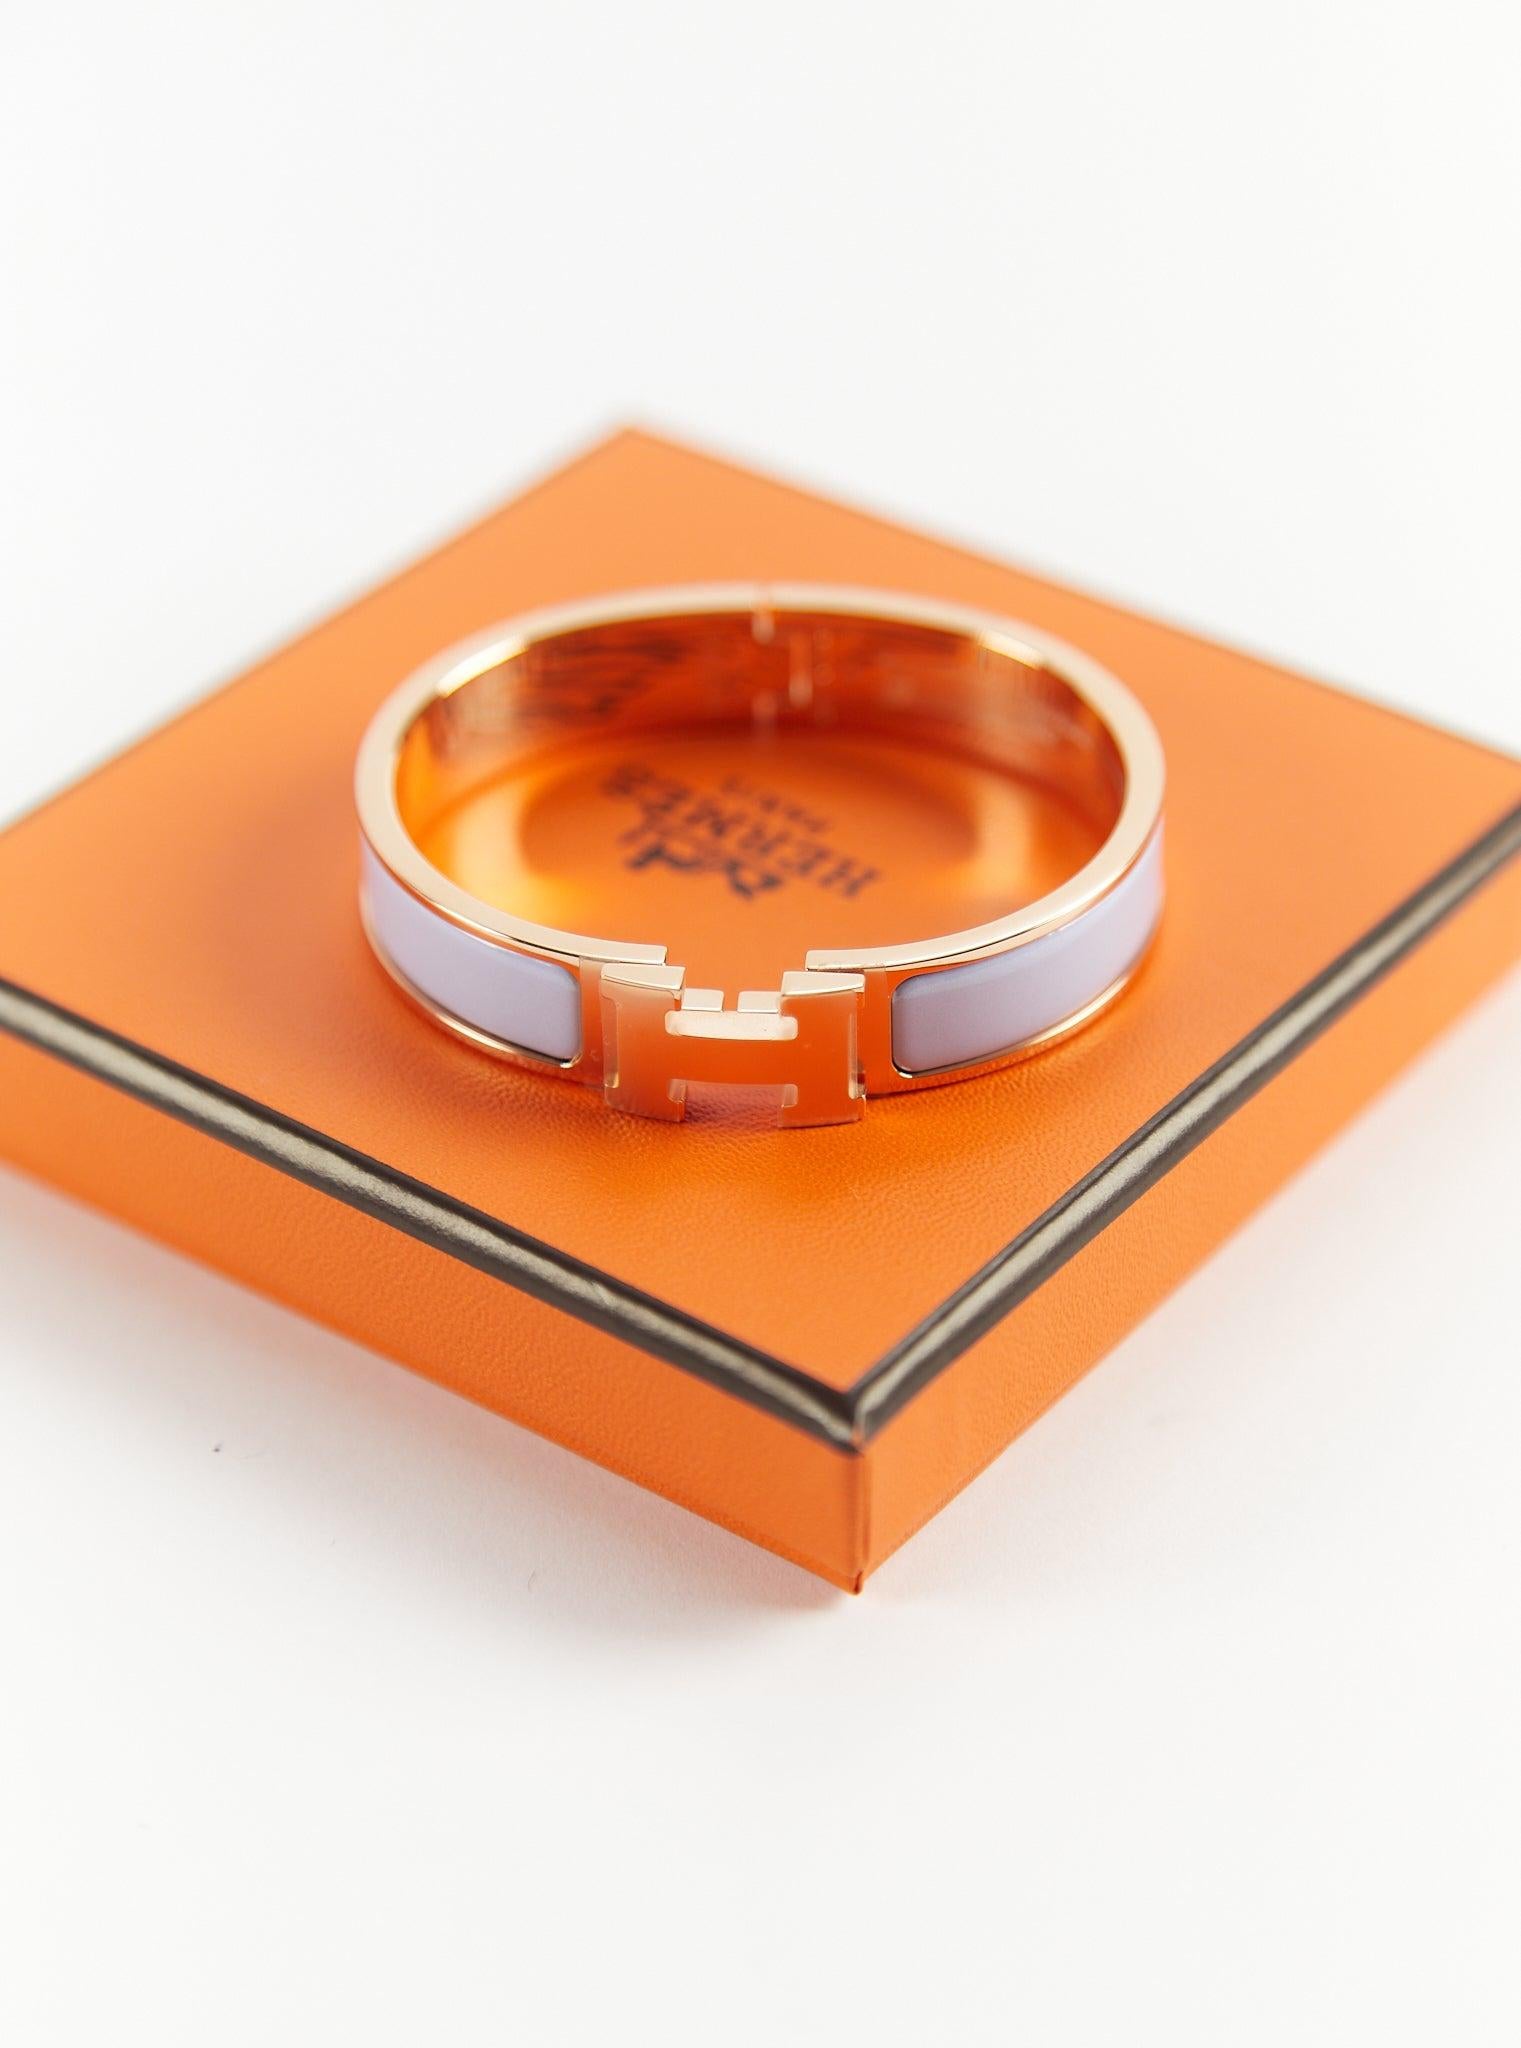 Hermès Clic H PM Armband aus Parme und Roségold

Größe des Handgelenks: 16.8 cm  Breite: 12 mm

Hergestellt in Frankreich

